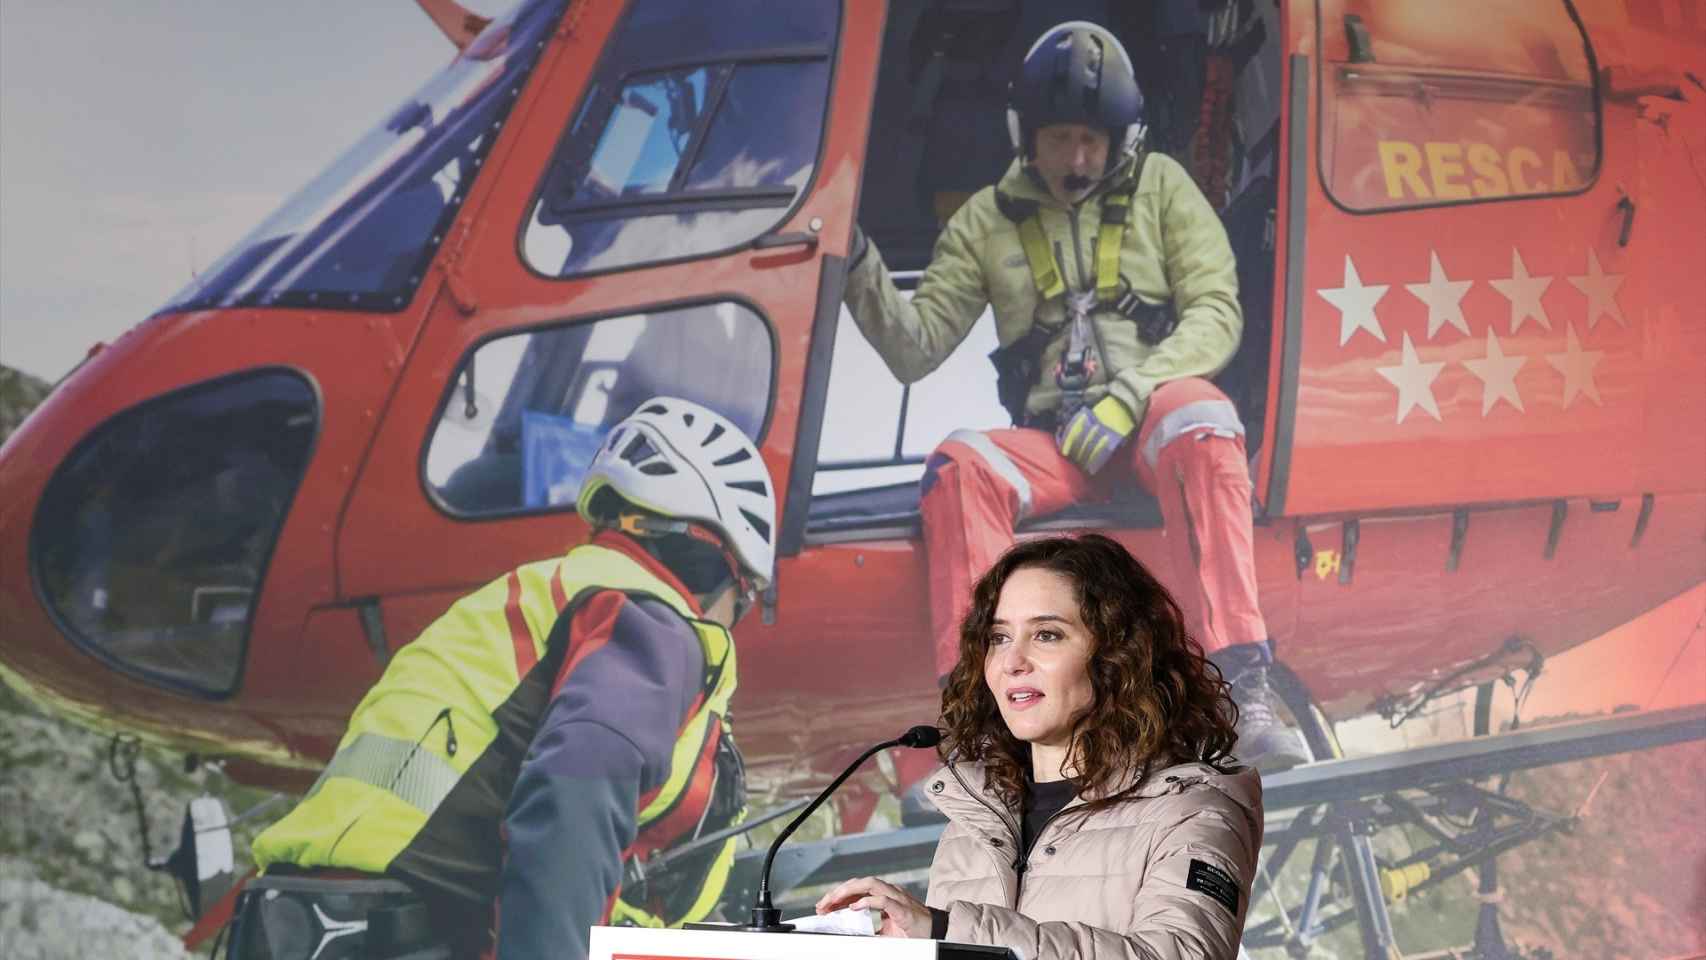 Isabel Díaz Ayuso, este sábado en la celebración del aniversario del Grupo Especial de Rescate en Altura (GERA), en el parque de bomberos de Navacerrada.